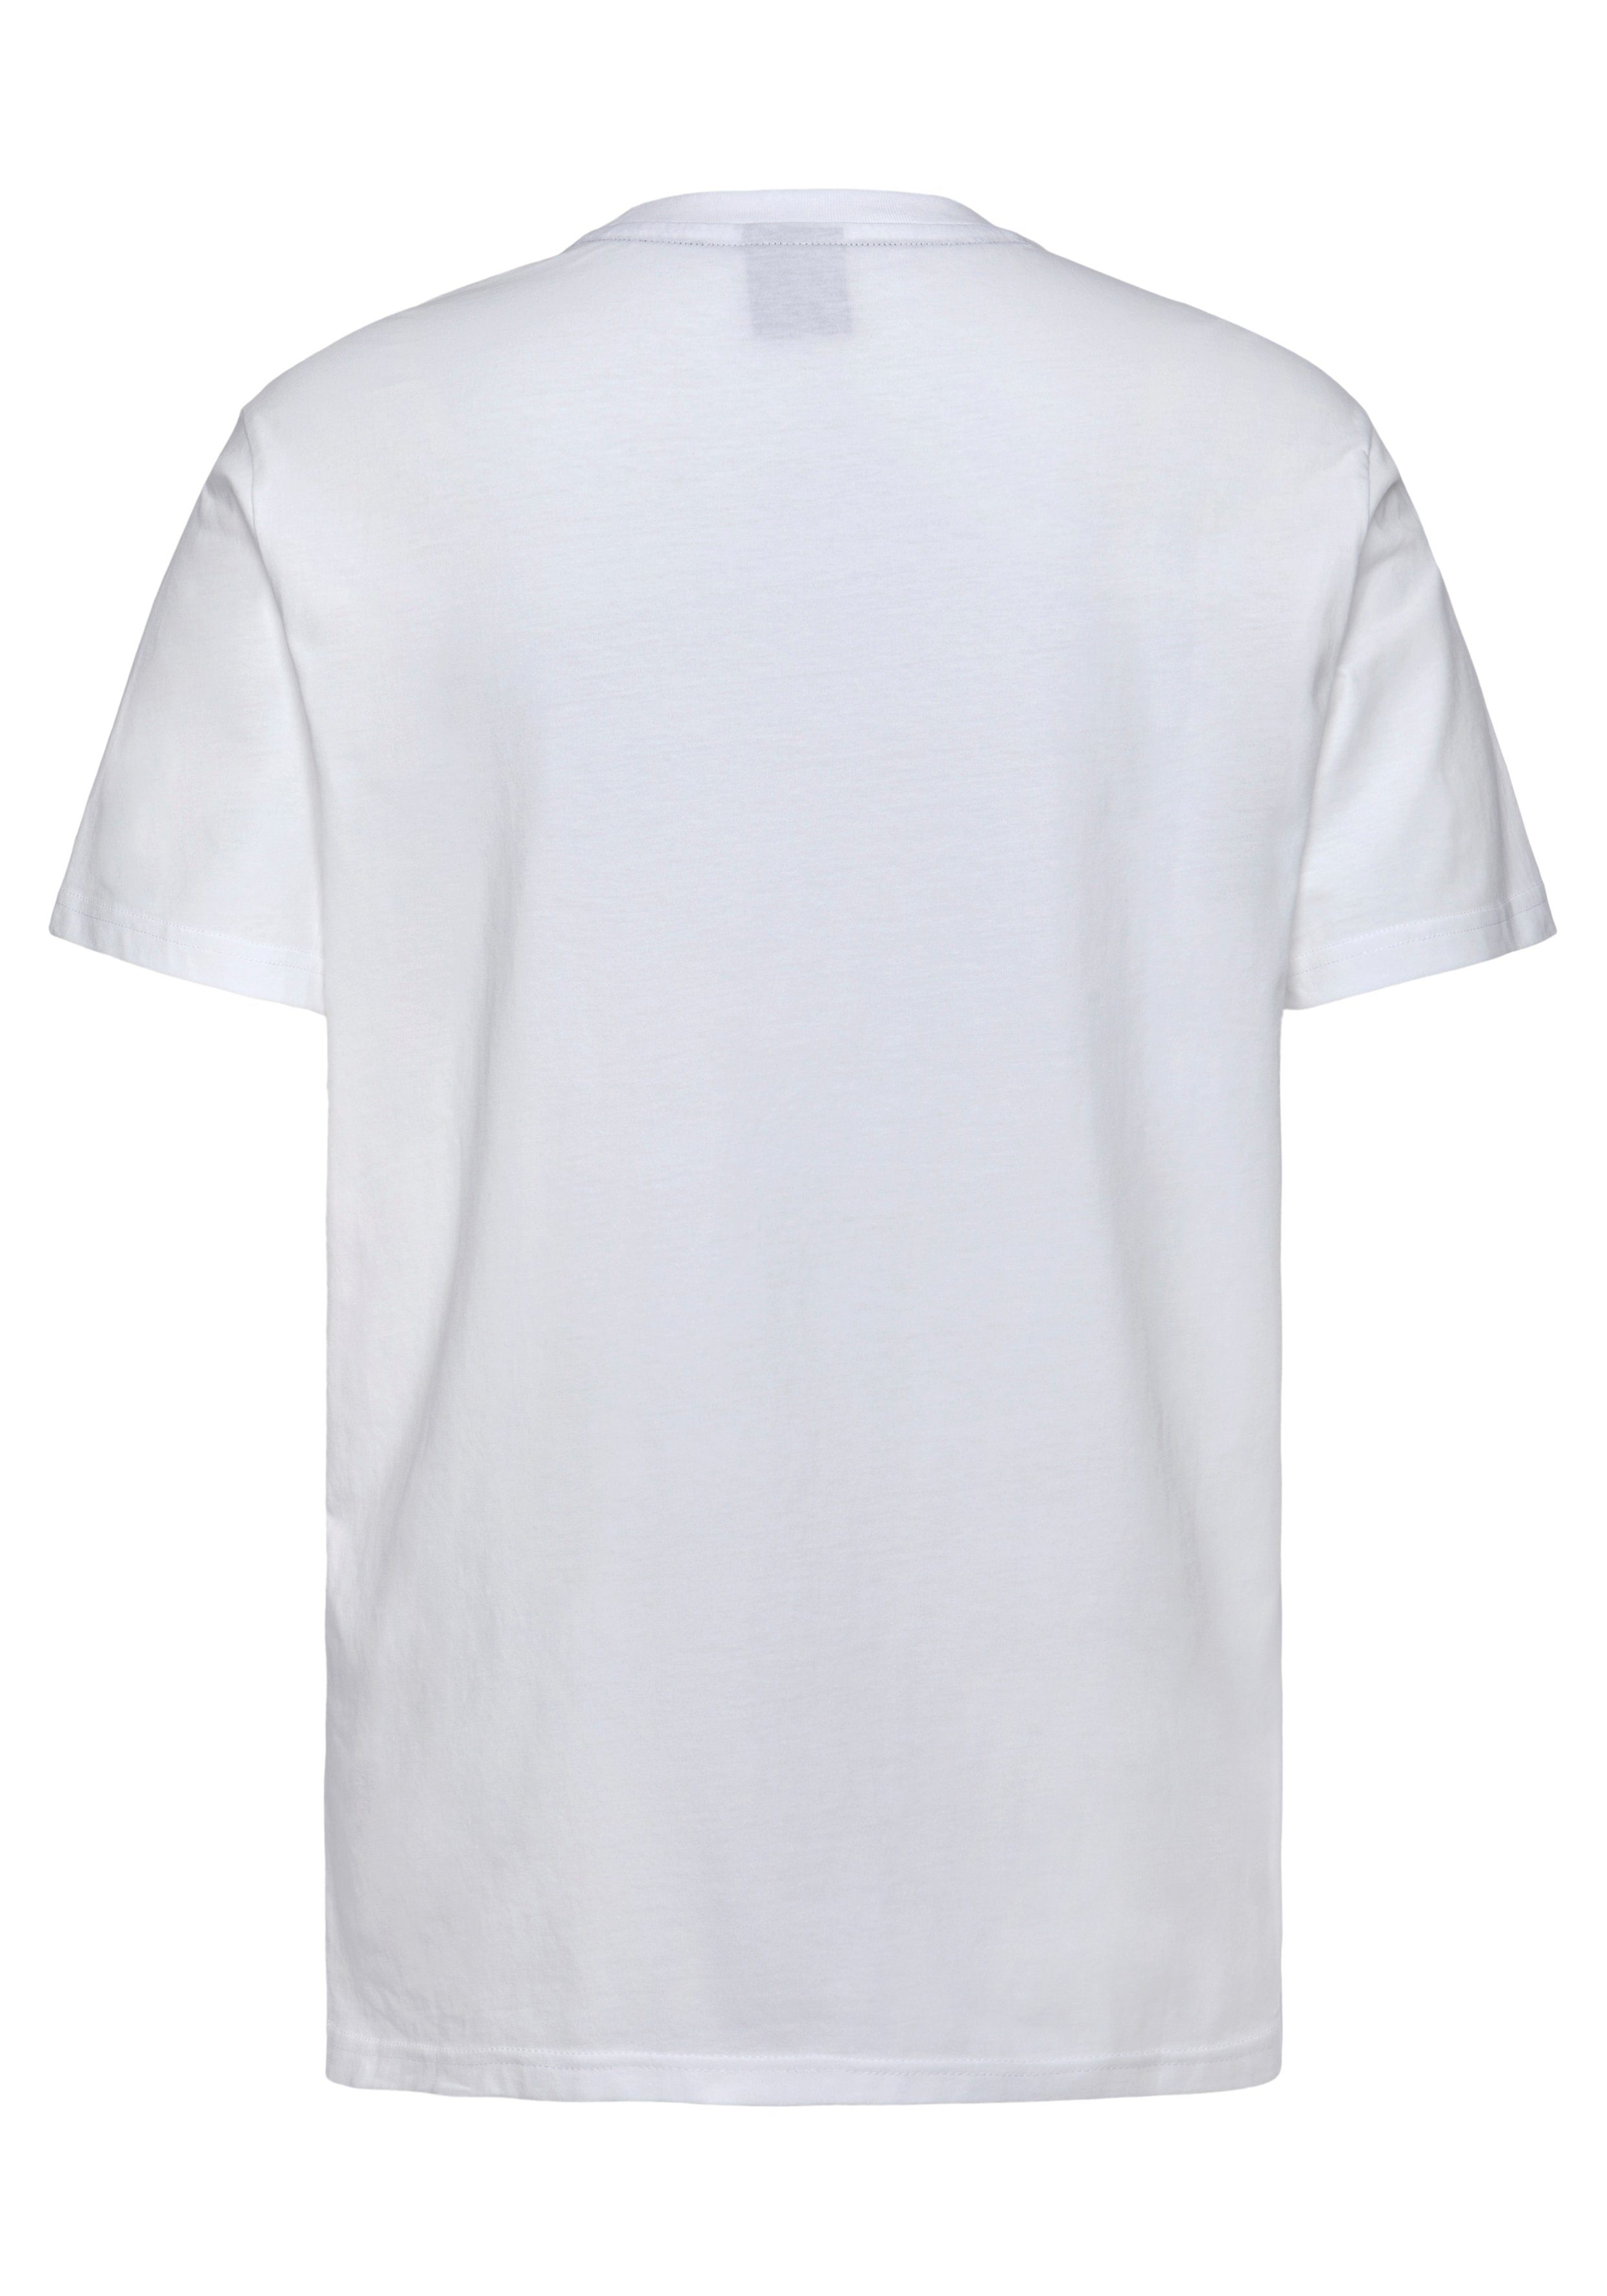 Champion T-Shirt (Packung, 2er-Pack) weiß schwarz